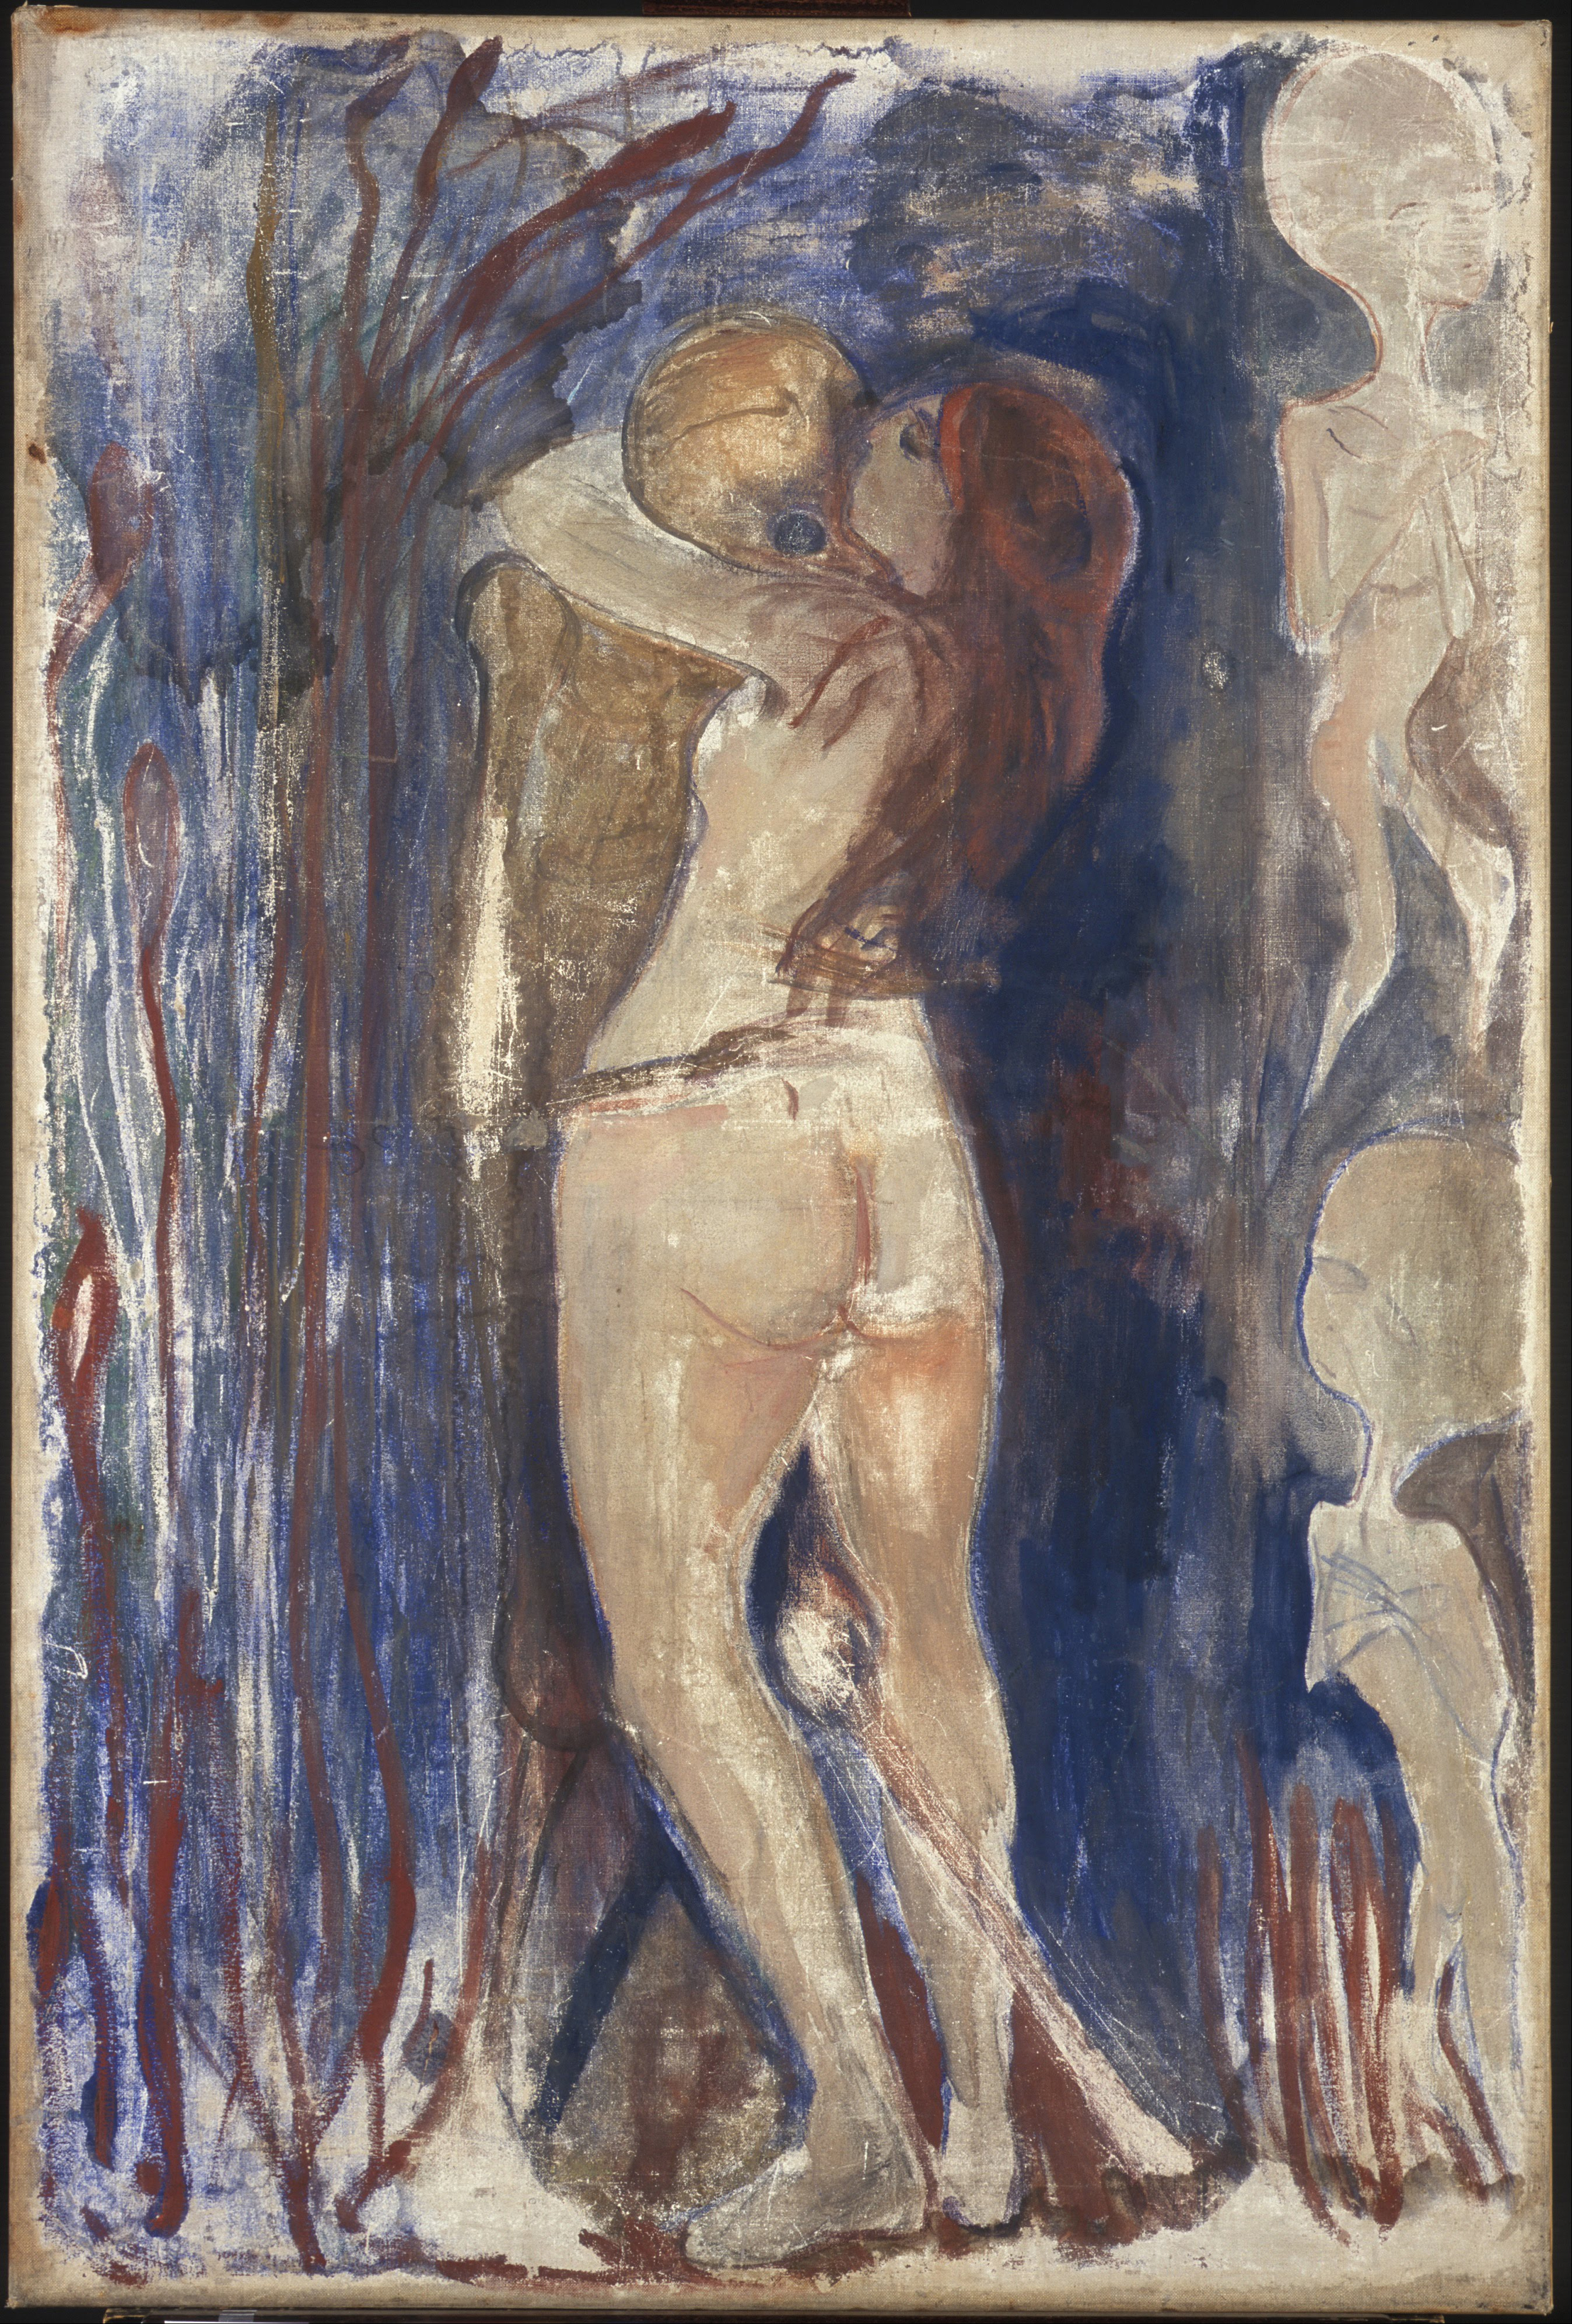 Θάνατος και Ζωή by Edvard Munch - 1894 - 86 x 128 εκ.cm 